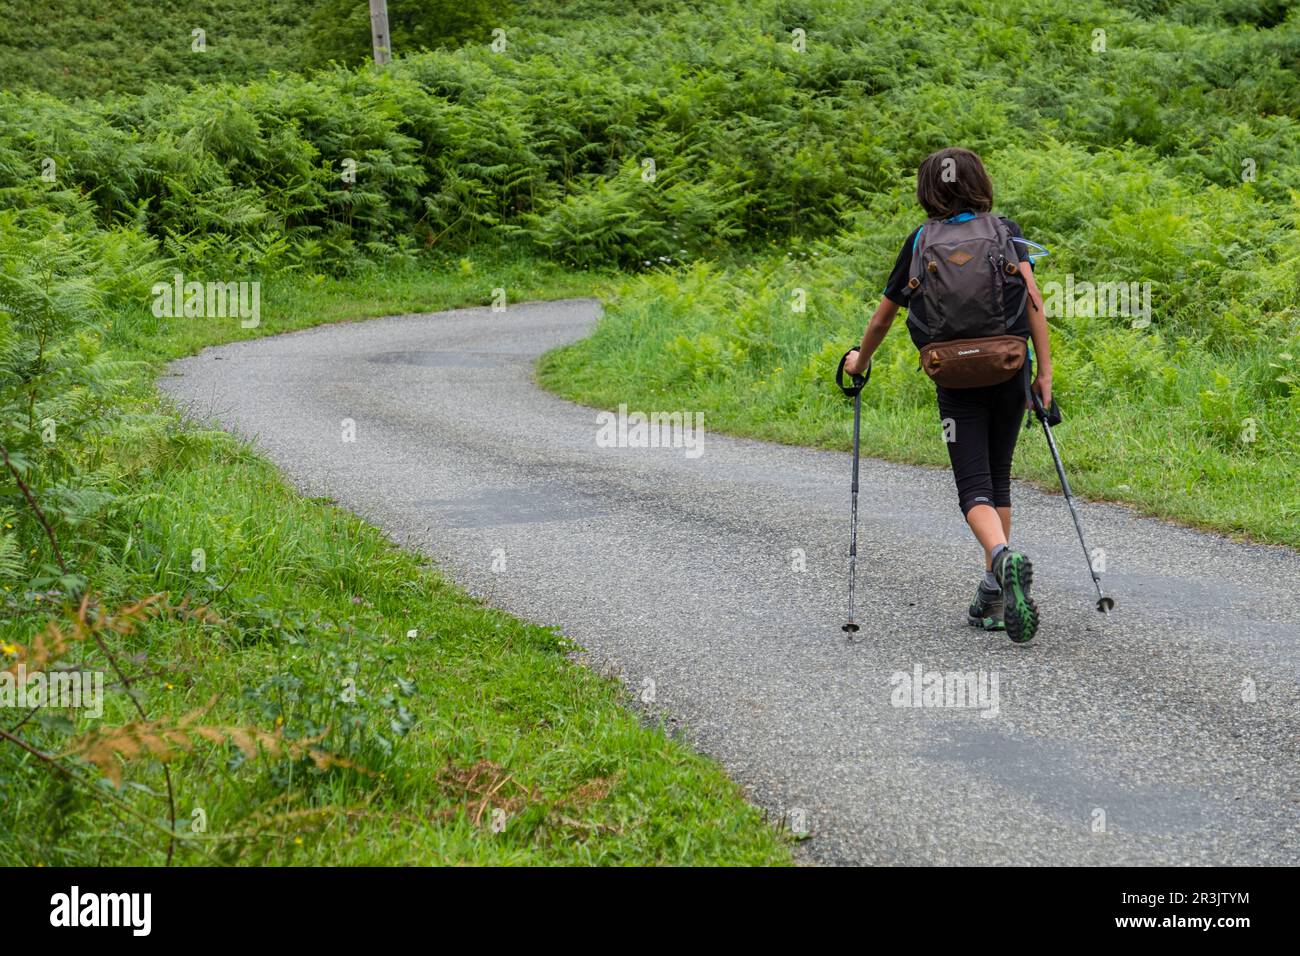 un trekker adolescente, región de Aquitania, departamento de Pirineos Atlánticos, Francia. Stock Photo